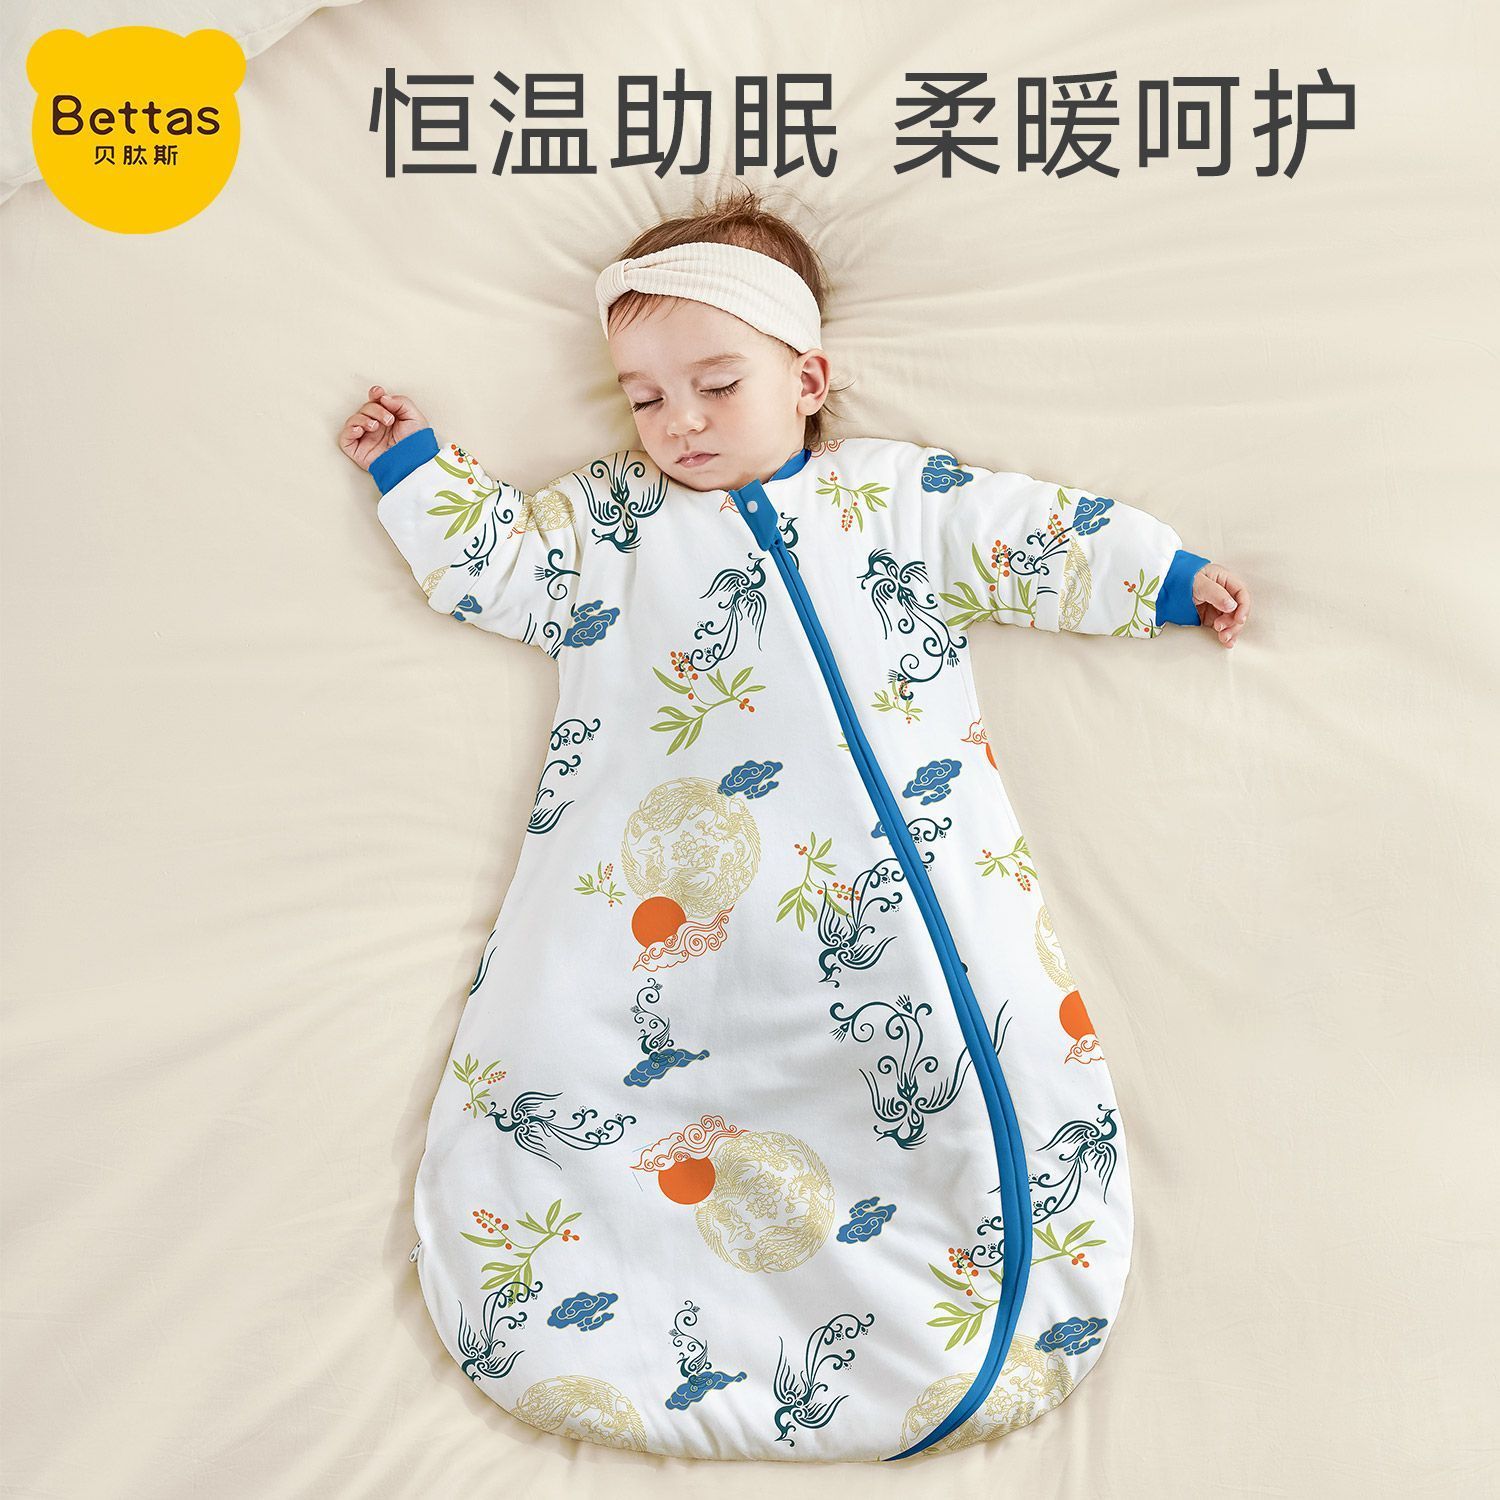 贝肽斯婴儿睡袋春秋款恒温一体式儿童连体睡衣宝宝睡袋防踢被神器